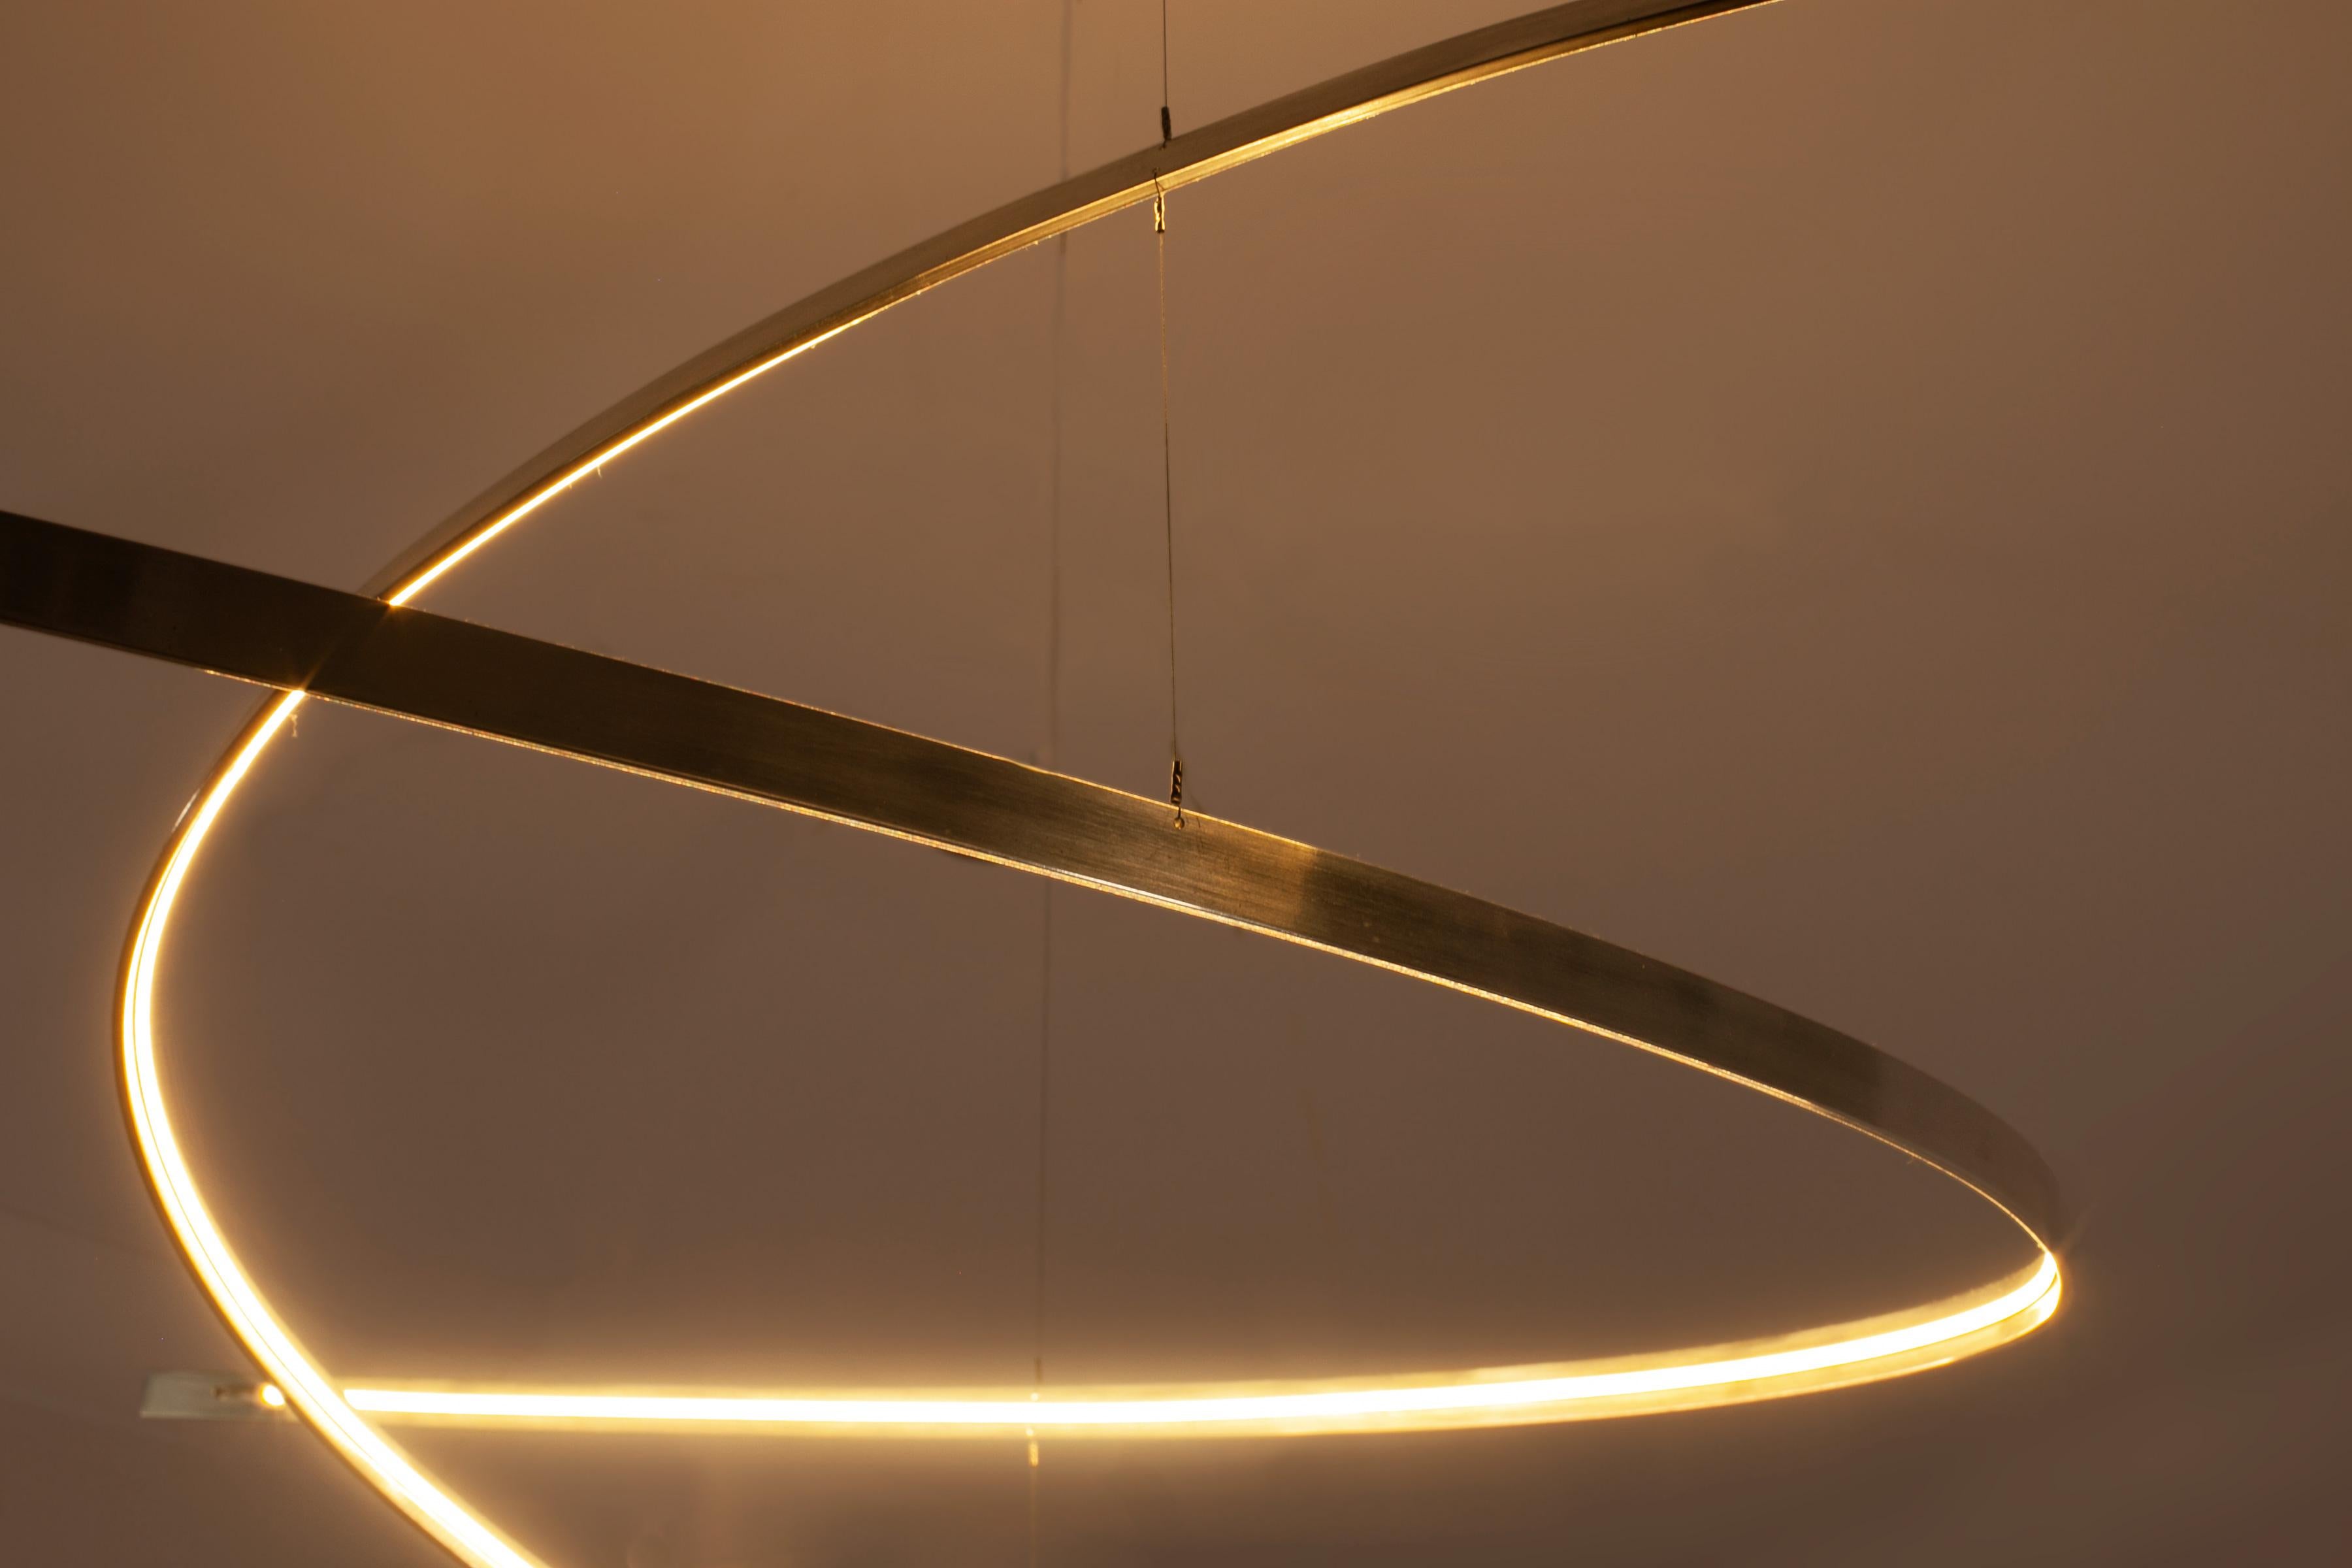 Britannique Arx, un lustre minimal et sculptural qui émet une lumière riche et calme semblable à une bougie en vente